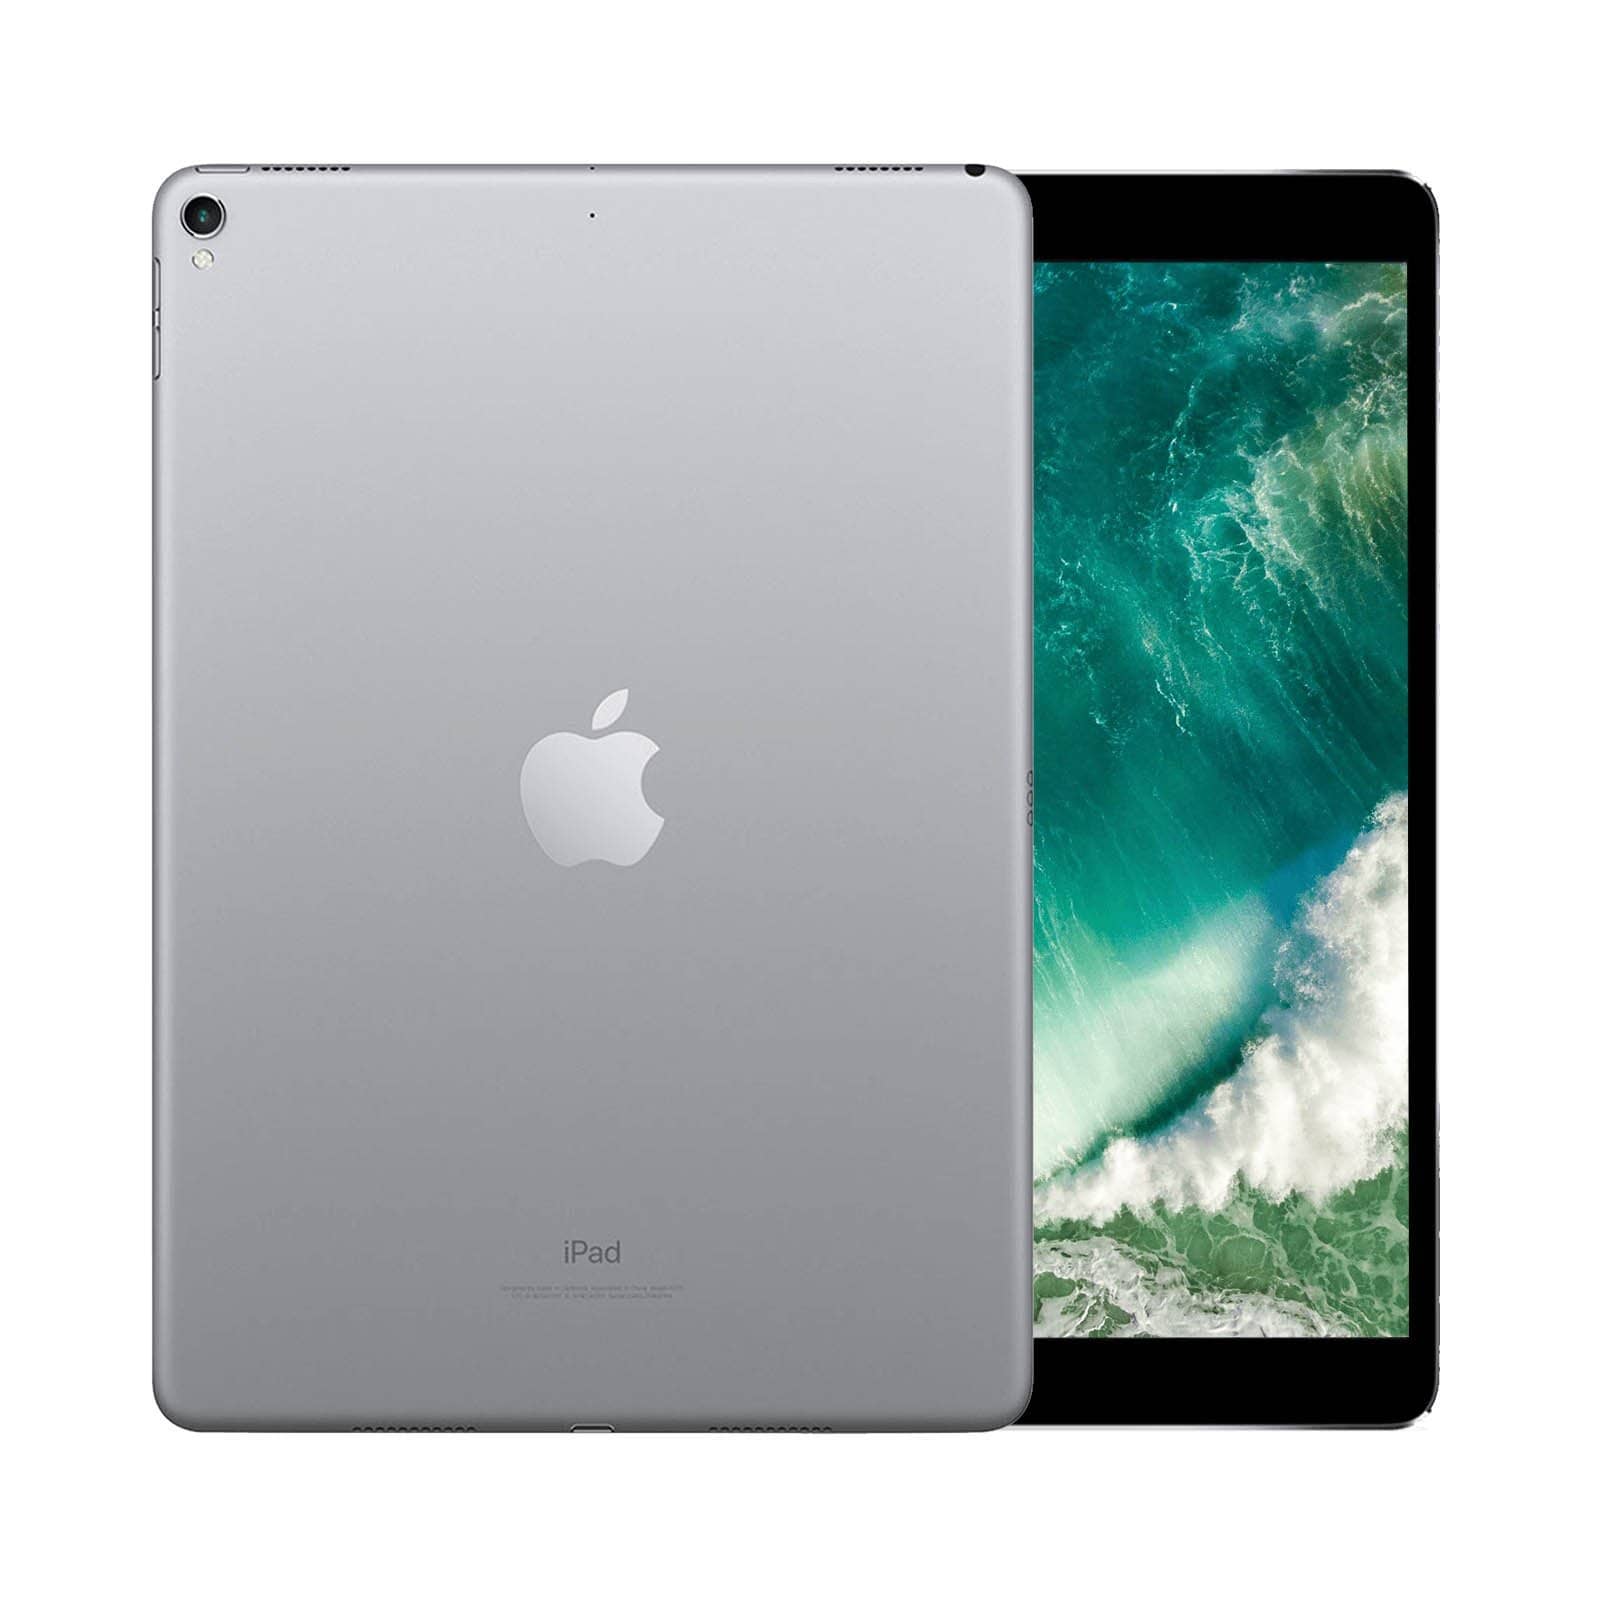 iPad Pro 10.5 Inch 512GB Space Grey Very Good - WiFi 512GB Space Grey Very Good